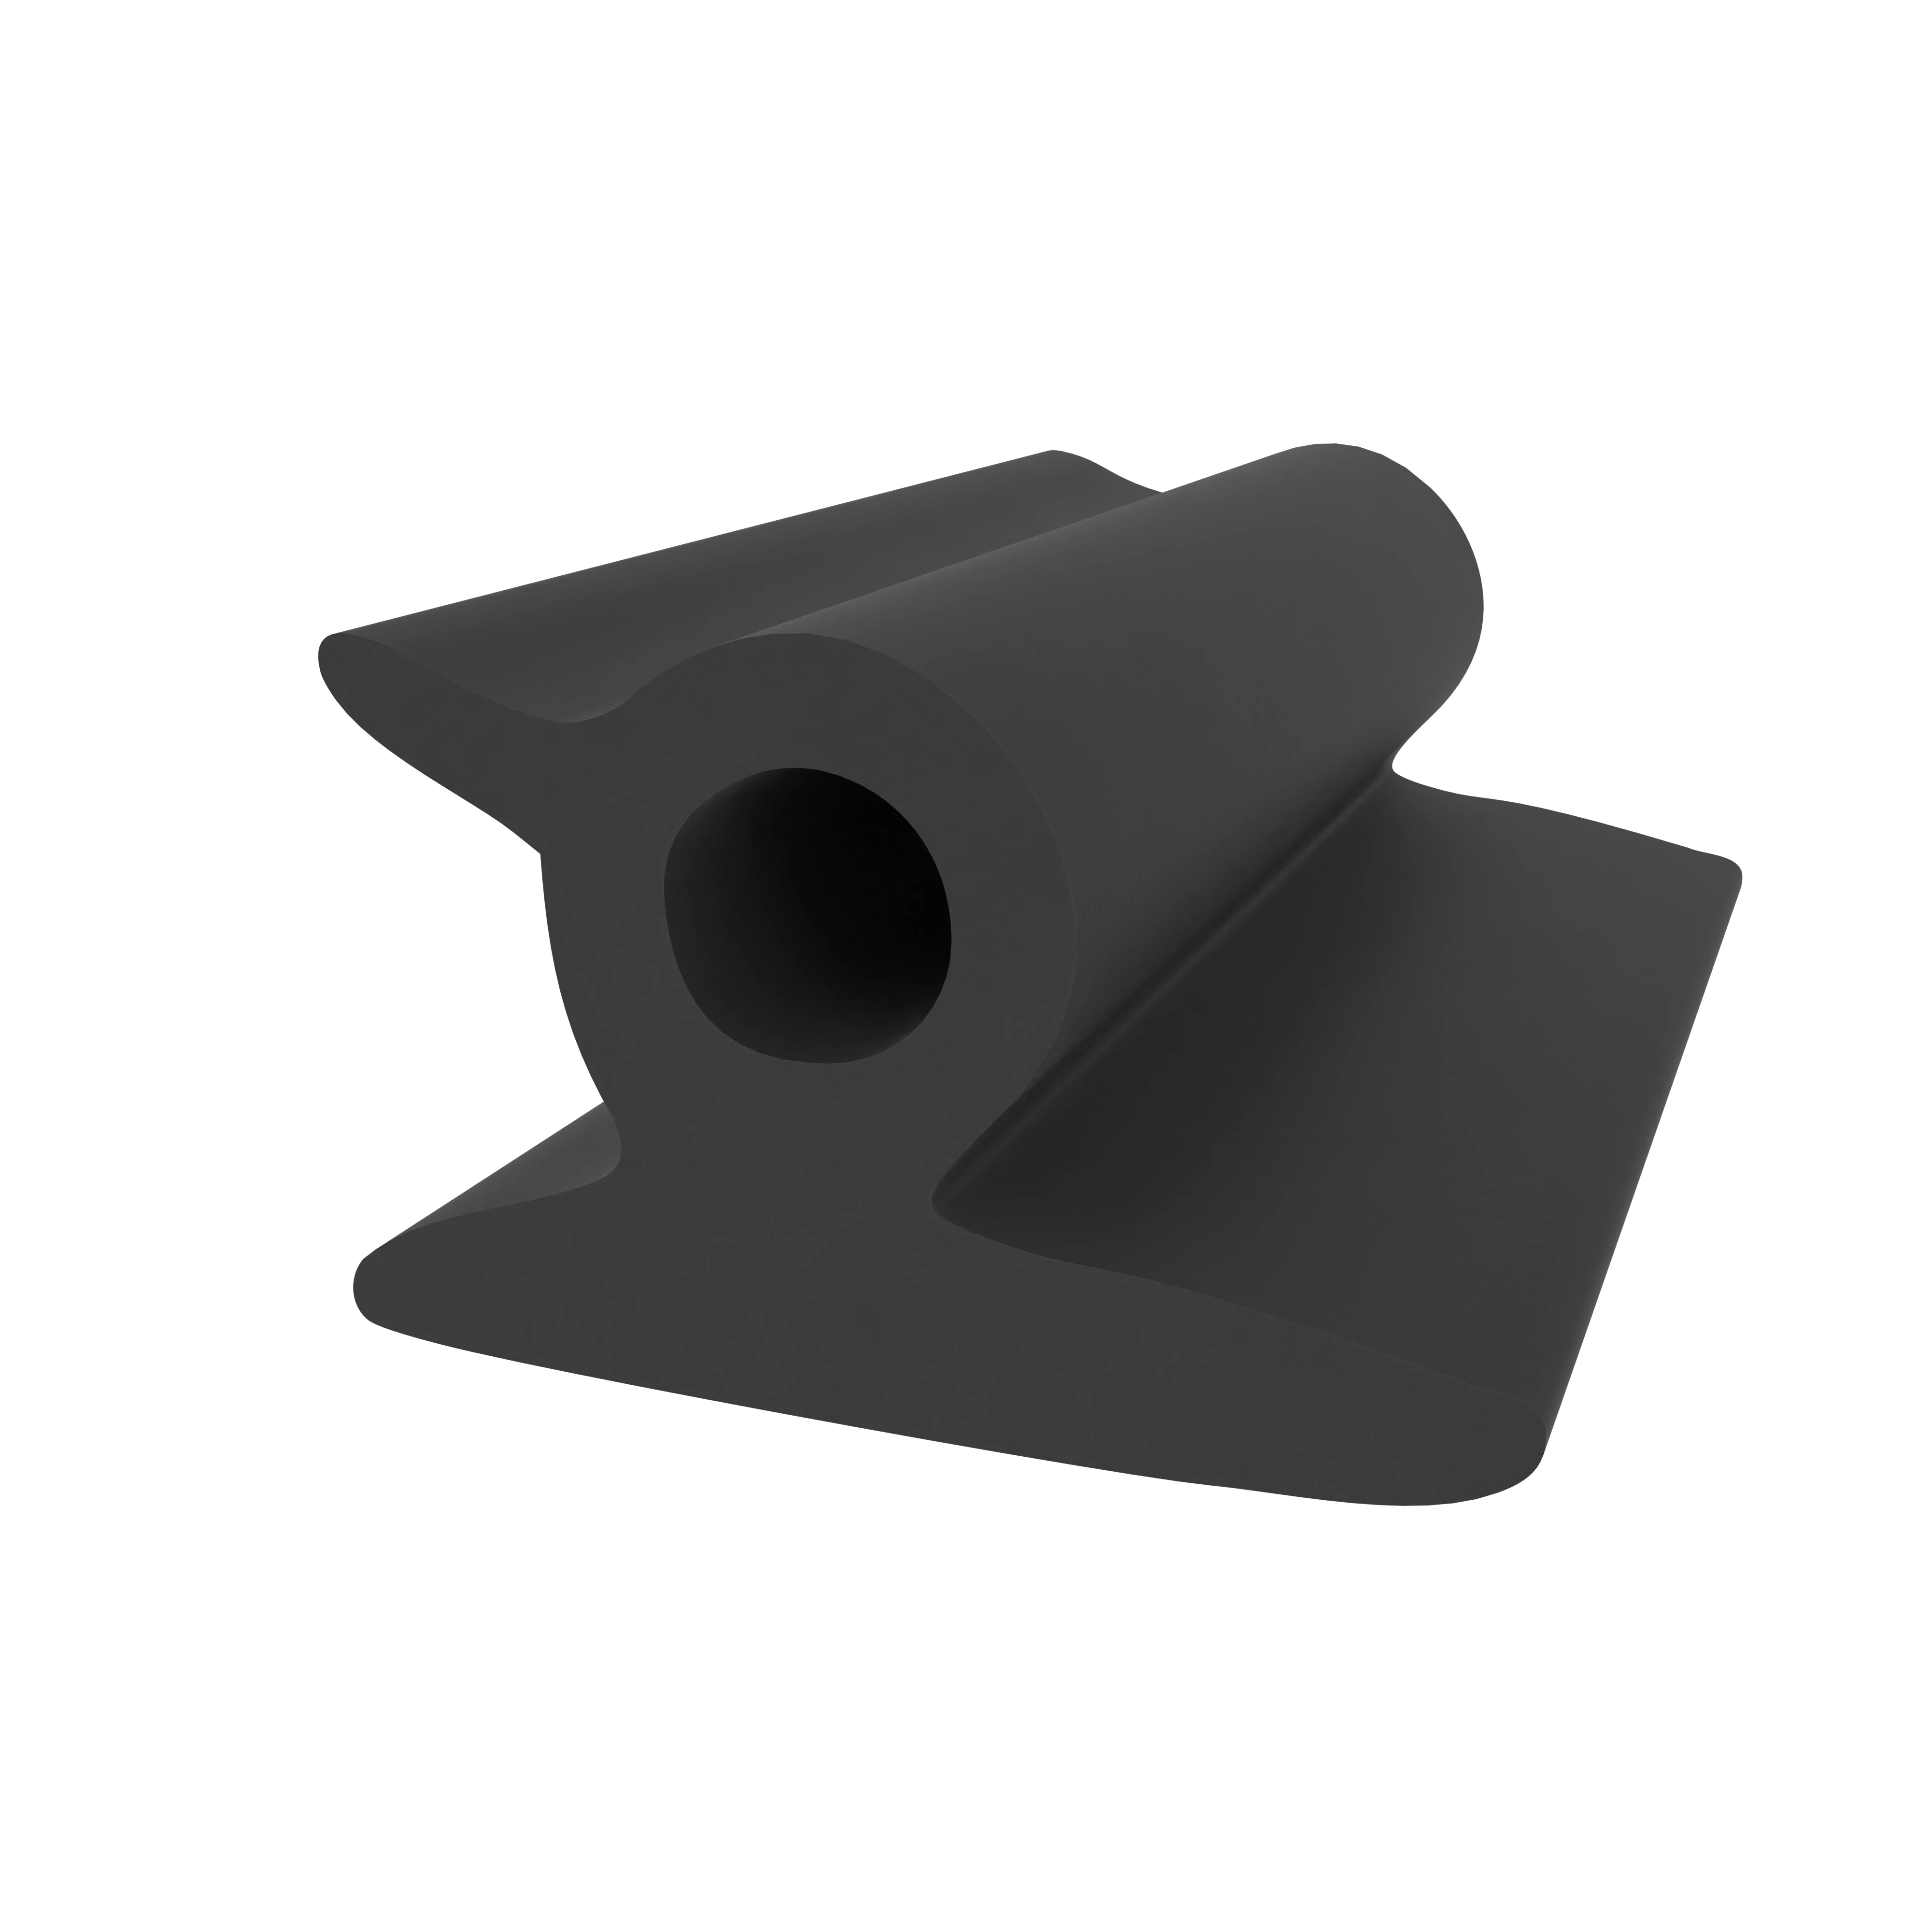 Rollladendichtprofil für VEKA Fenster | Höhe: 5,3 mm | Farbe: schwarz 